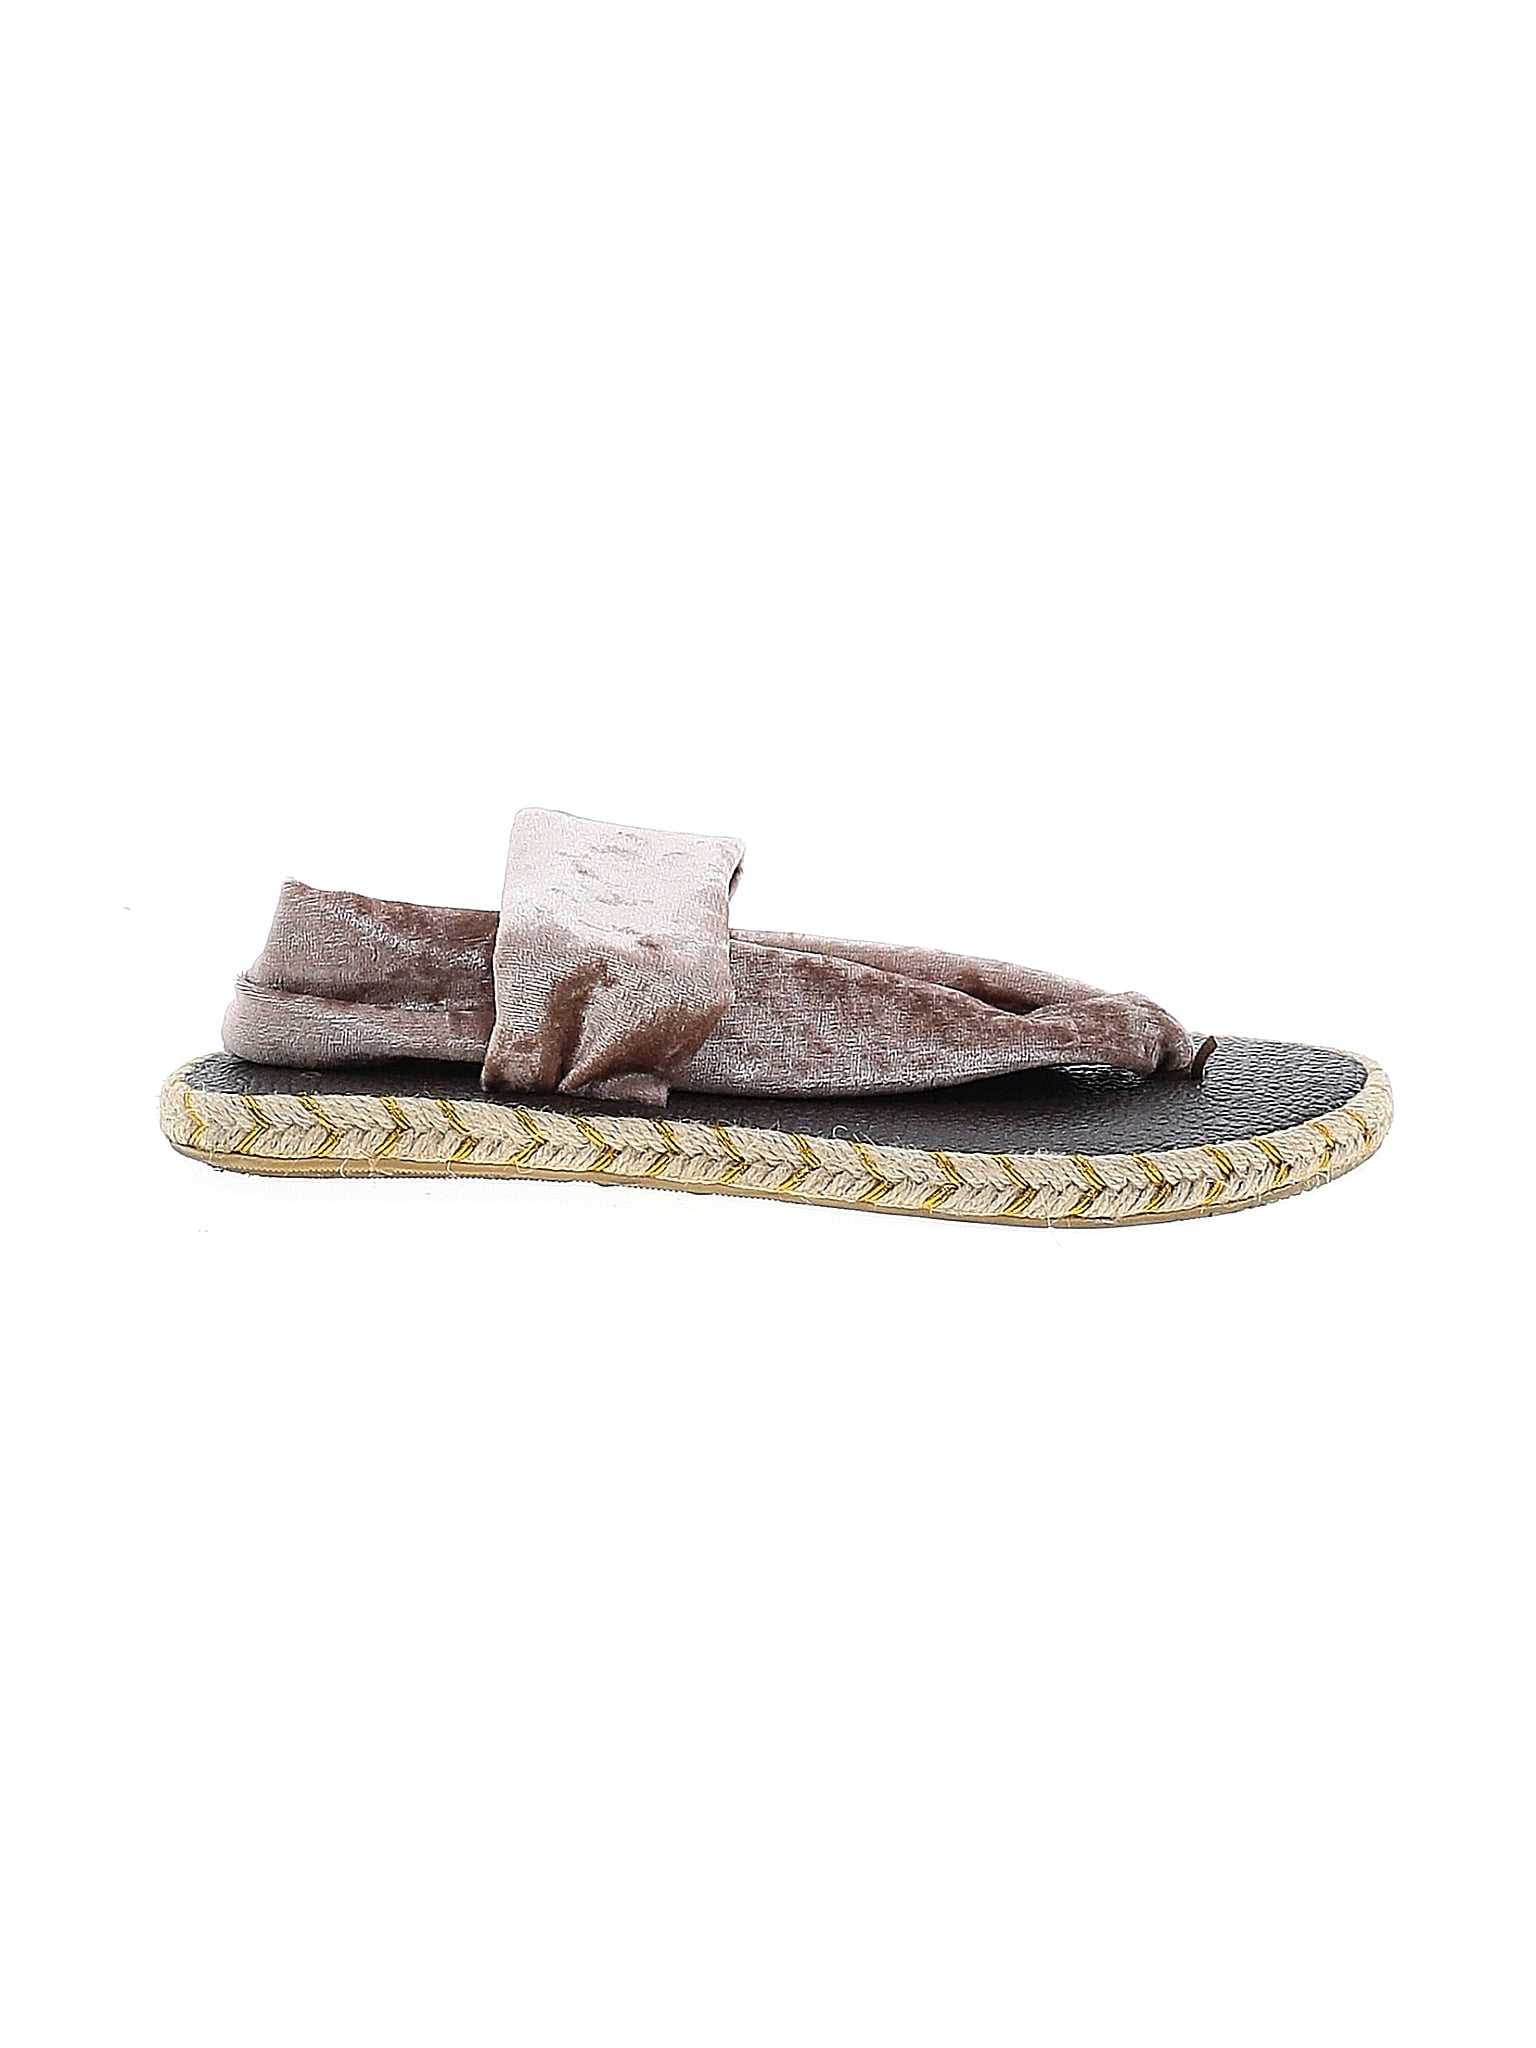 NALHO Sandals for Women - Poshmark